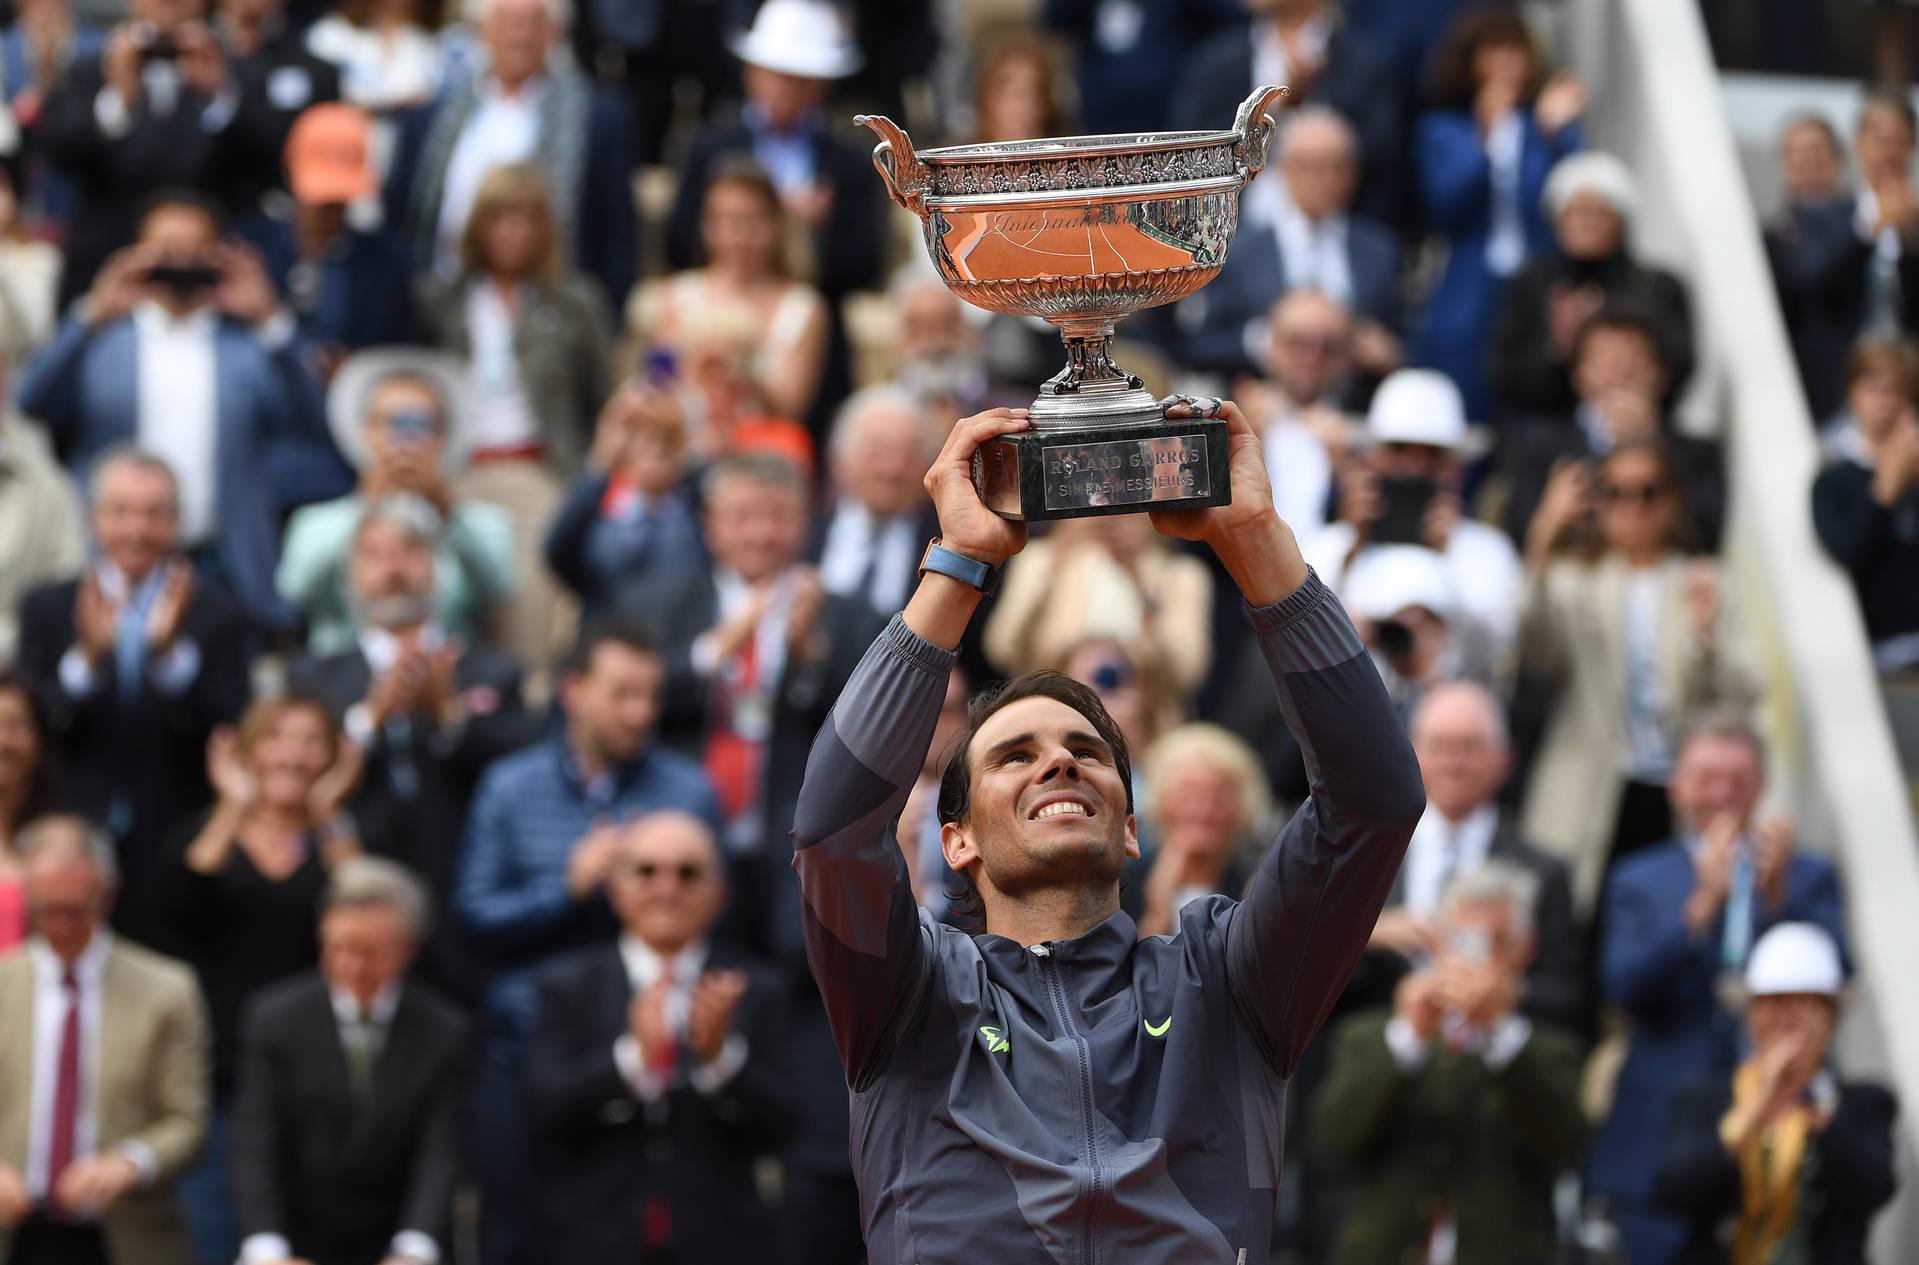 Rafael Nadal Roland Garros